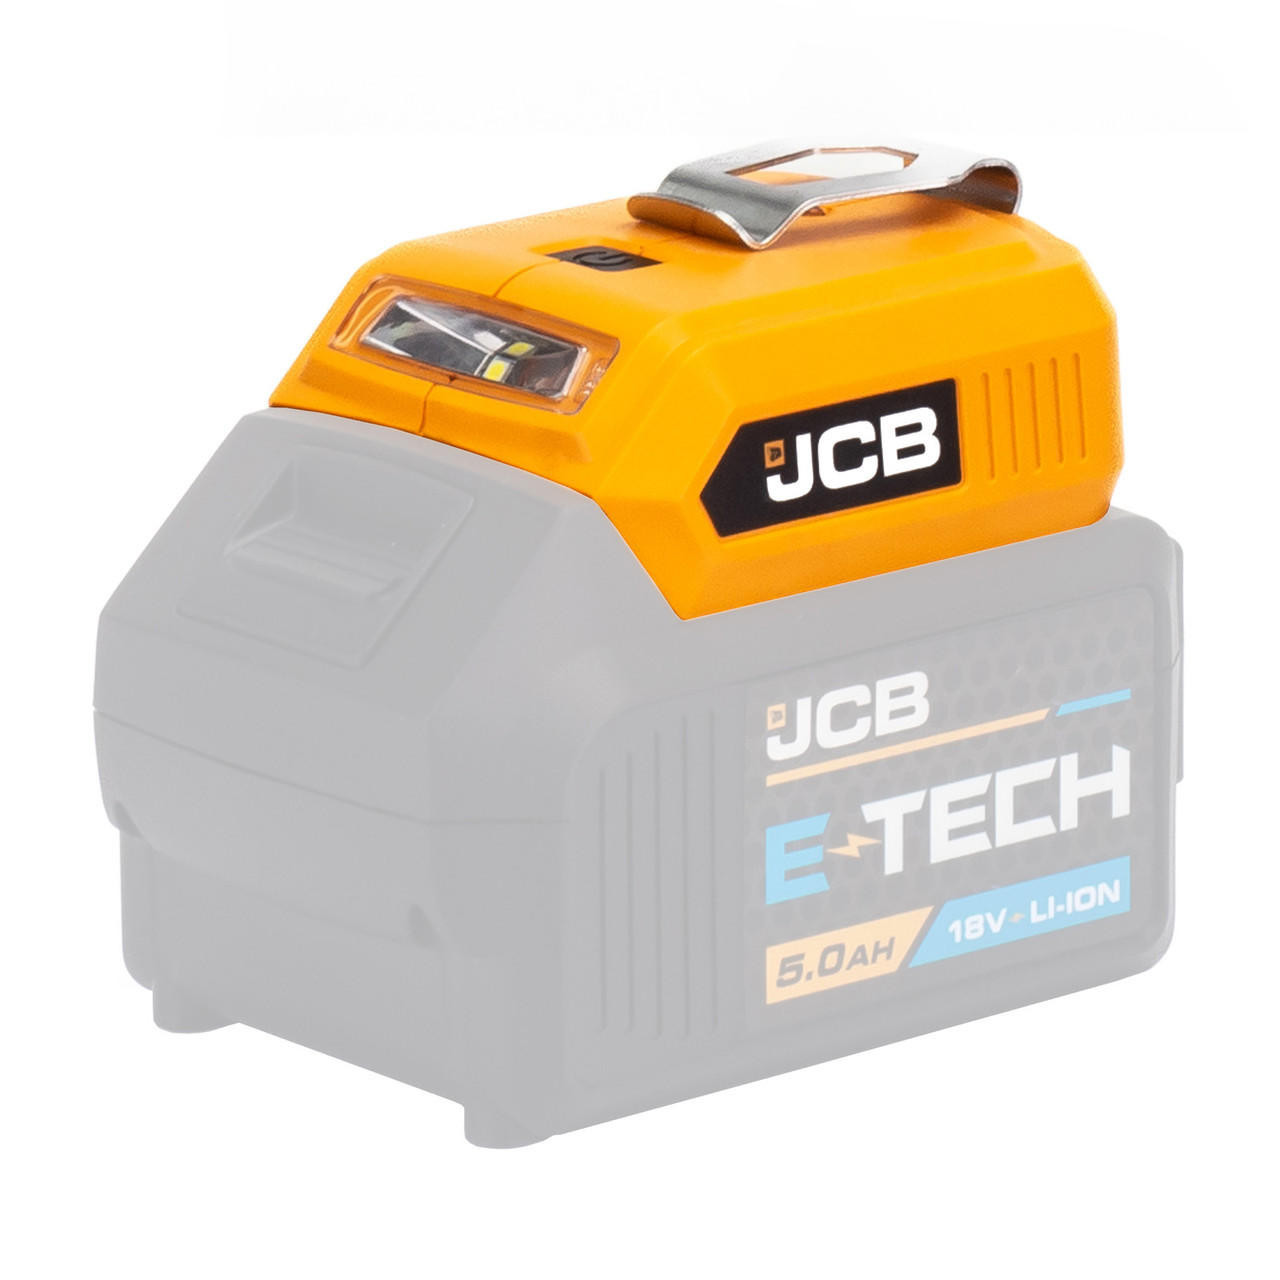 JCB 18V Cordless Angle Grinder - Bare Unit | Shop Online